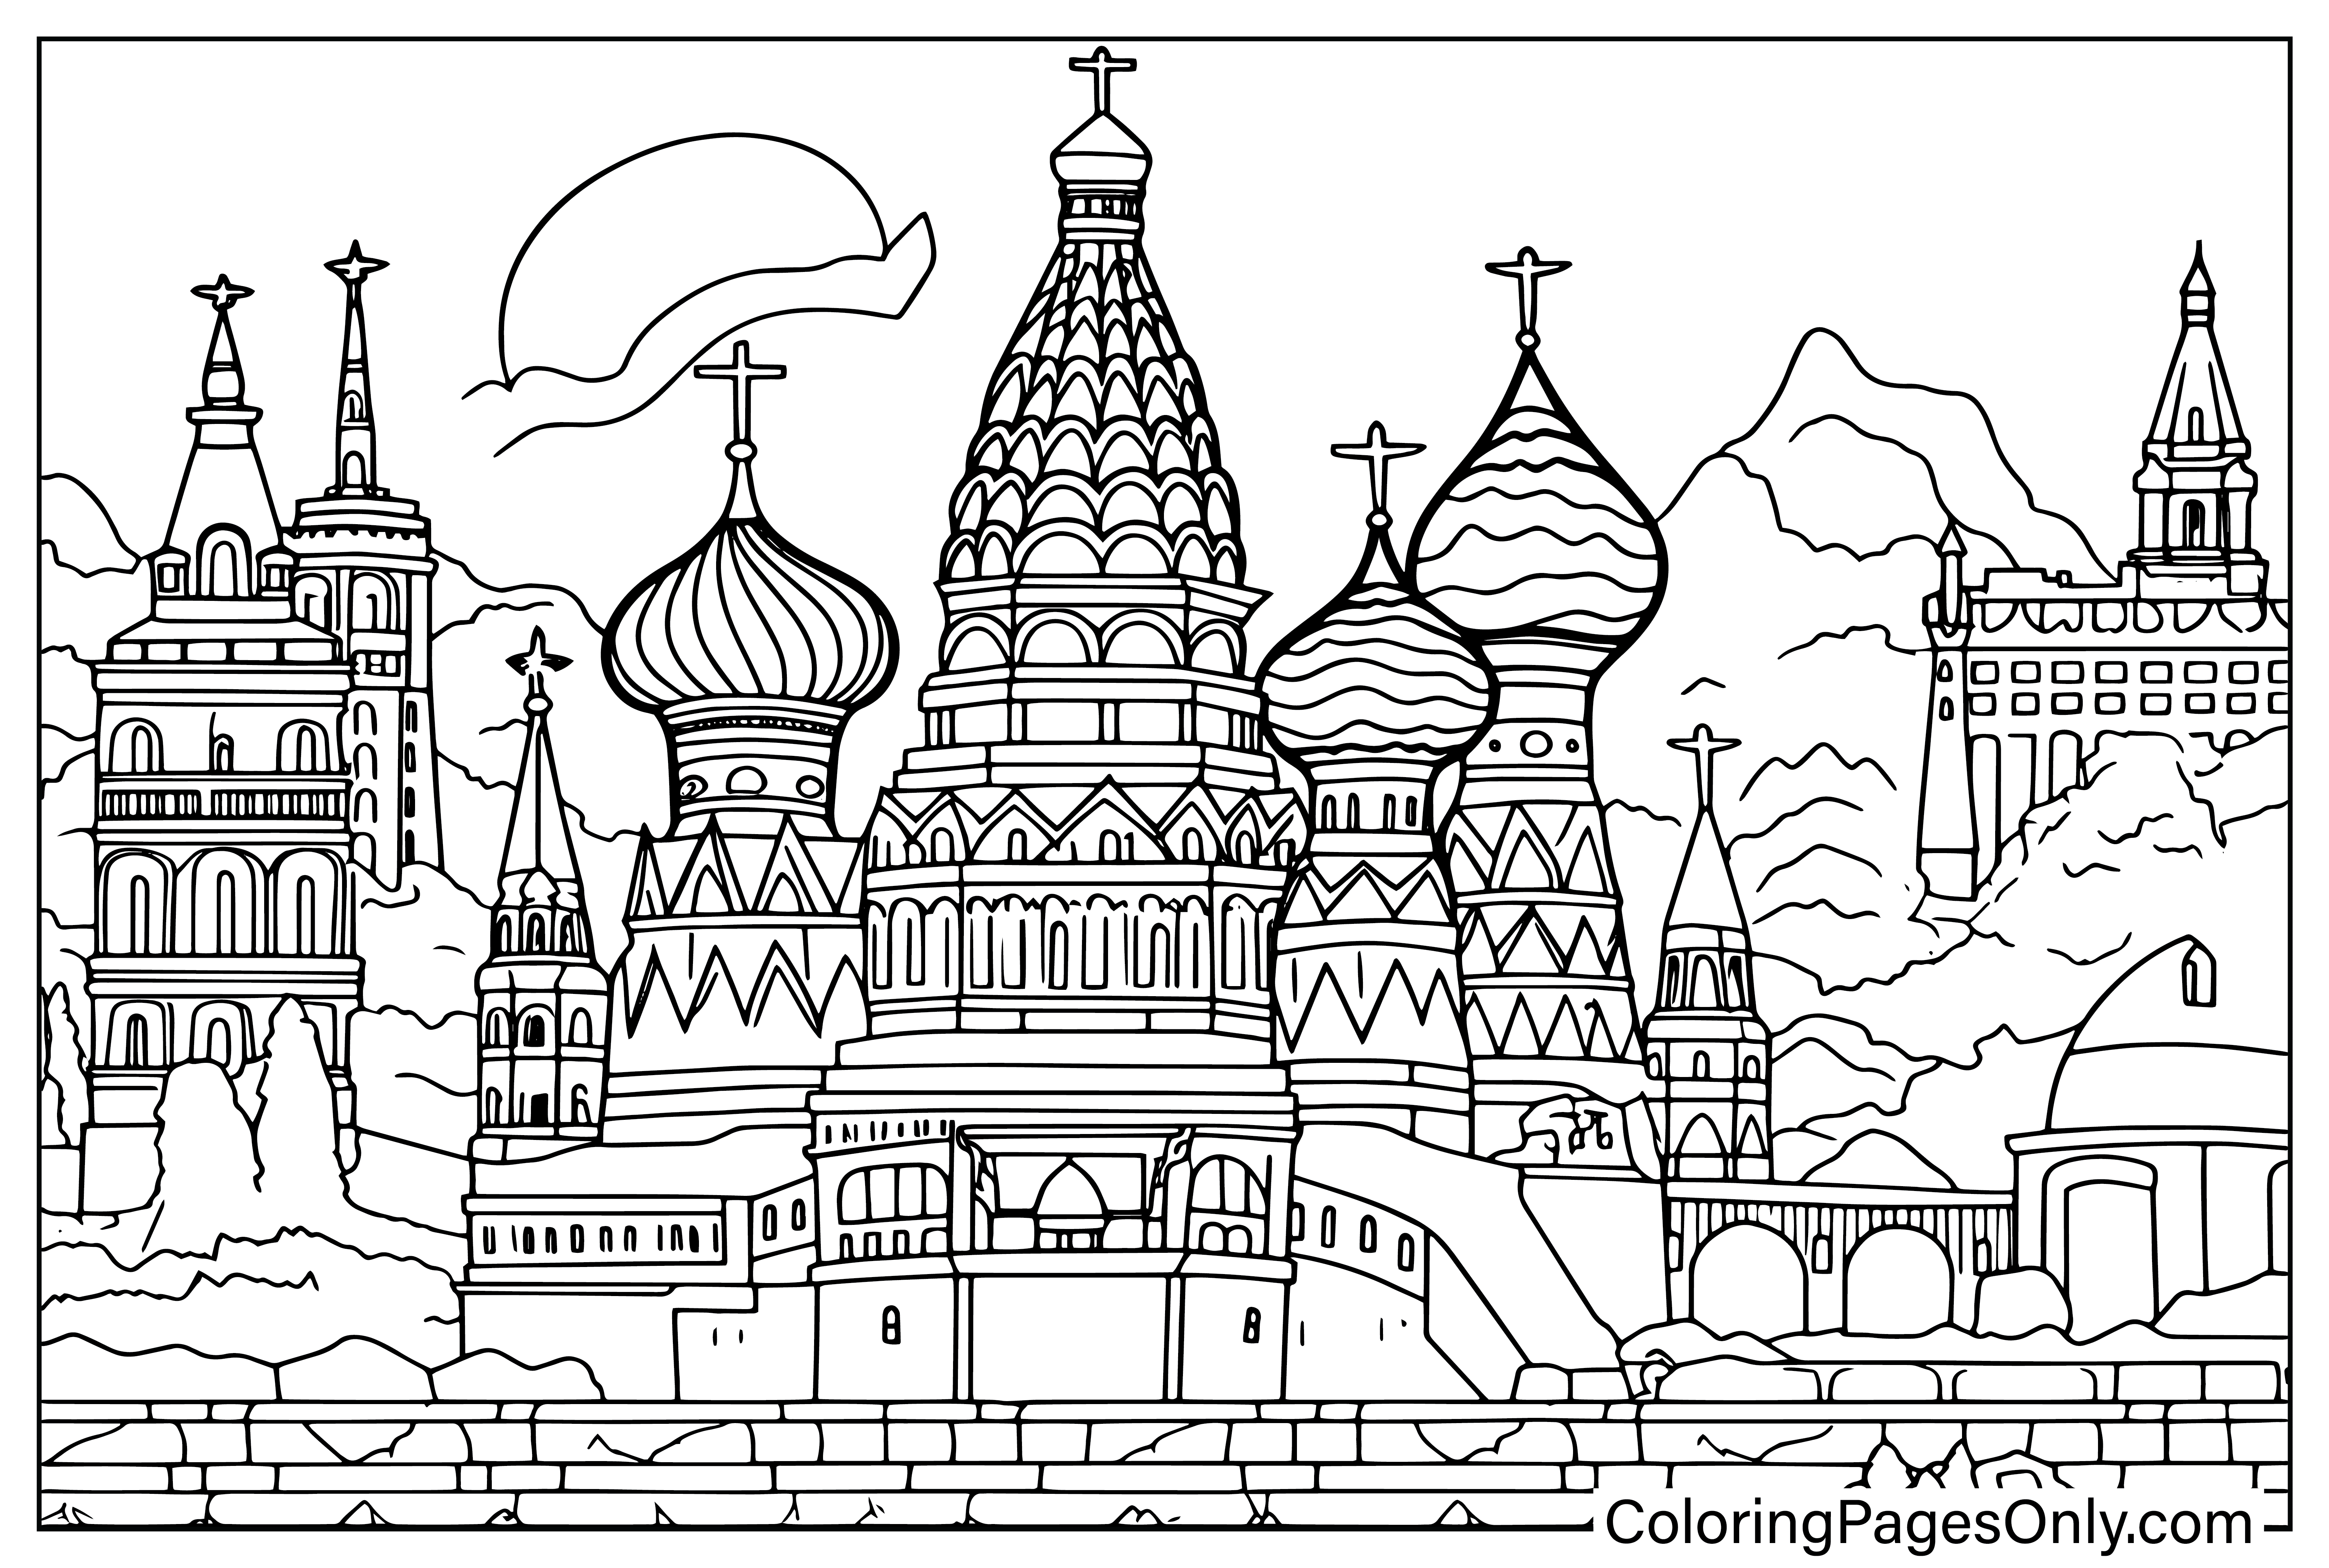 Stampa la pagina da colorare della Russia